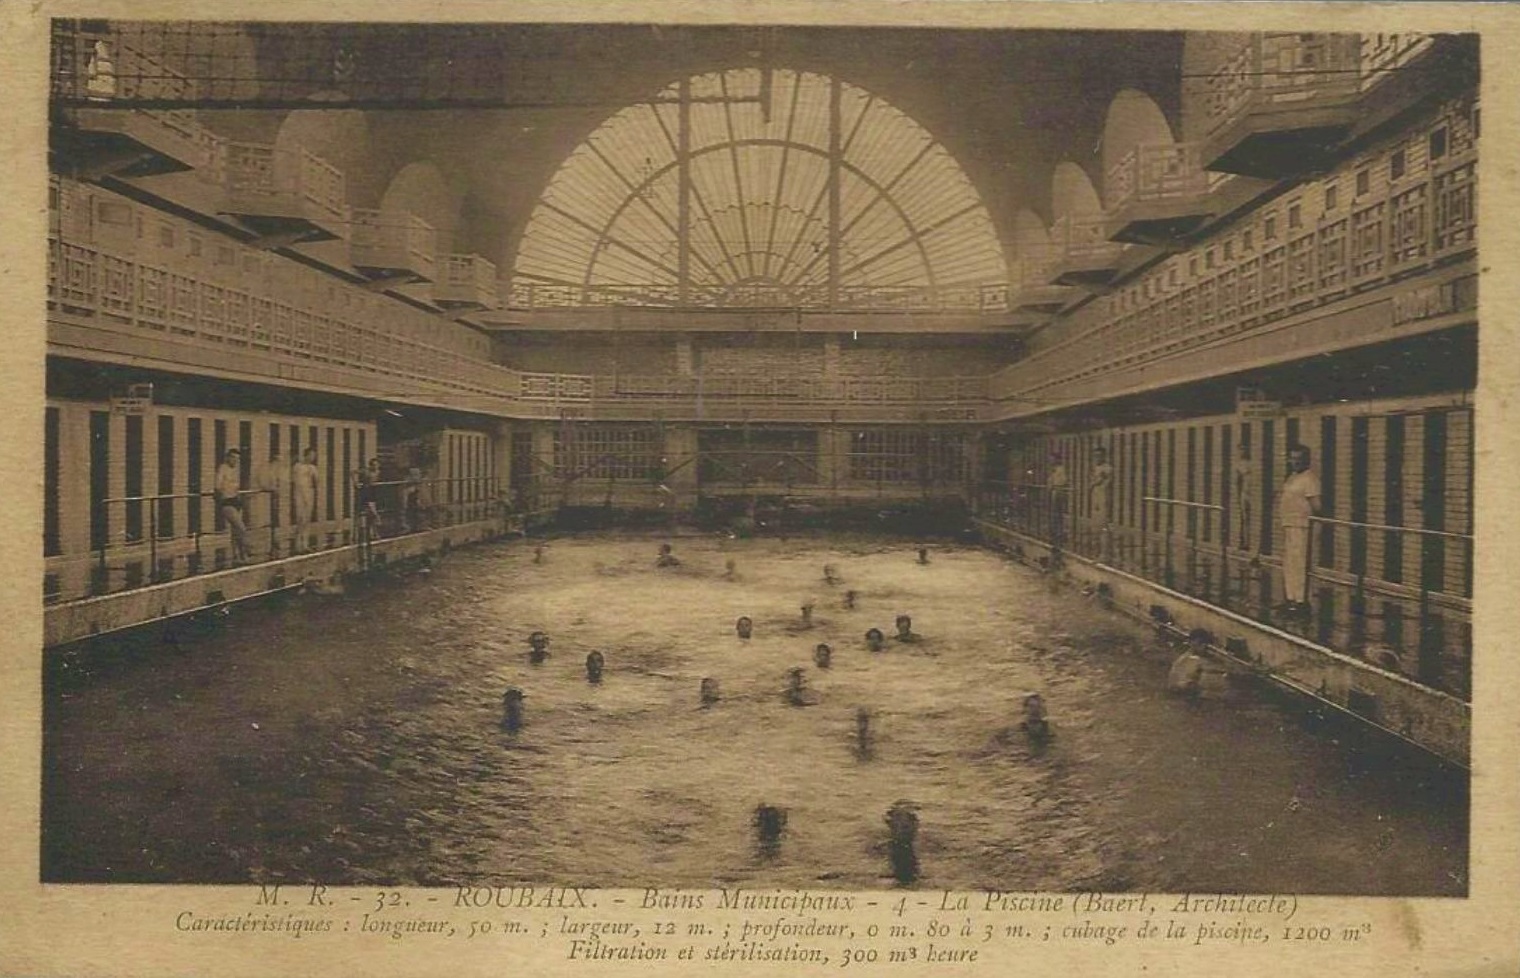 Les piscines municipales de l'entre-deux-guerres